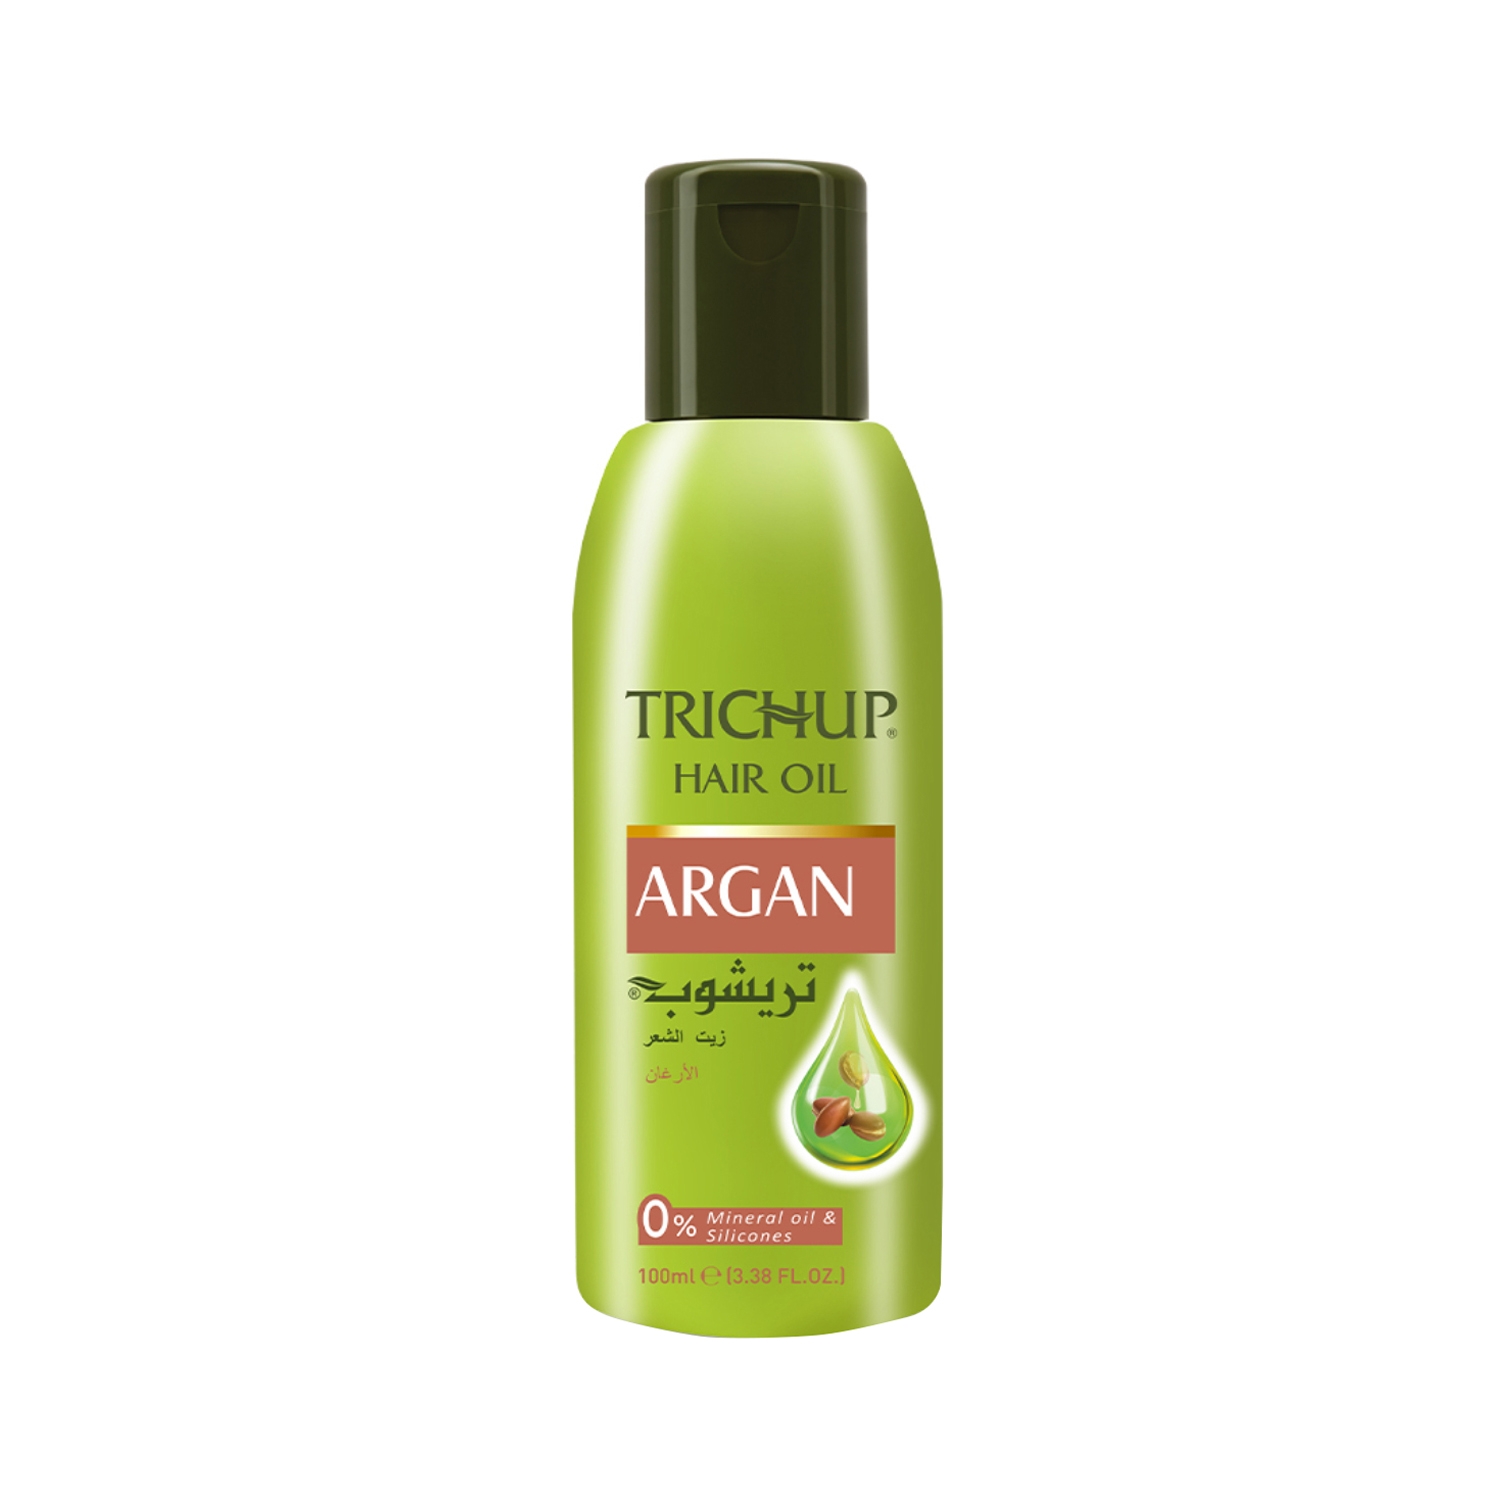 Trichup Argan Hair Oil (100ml)